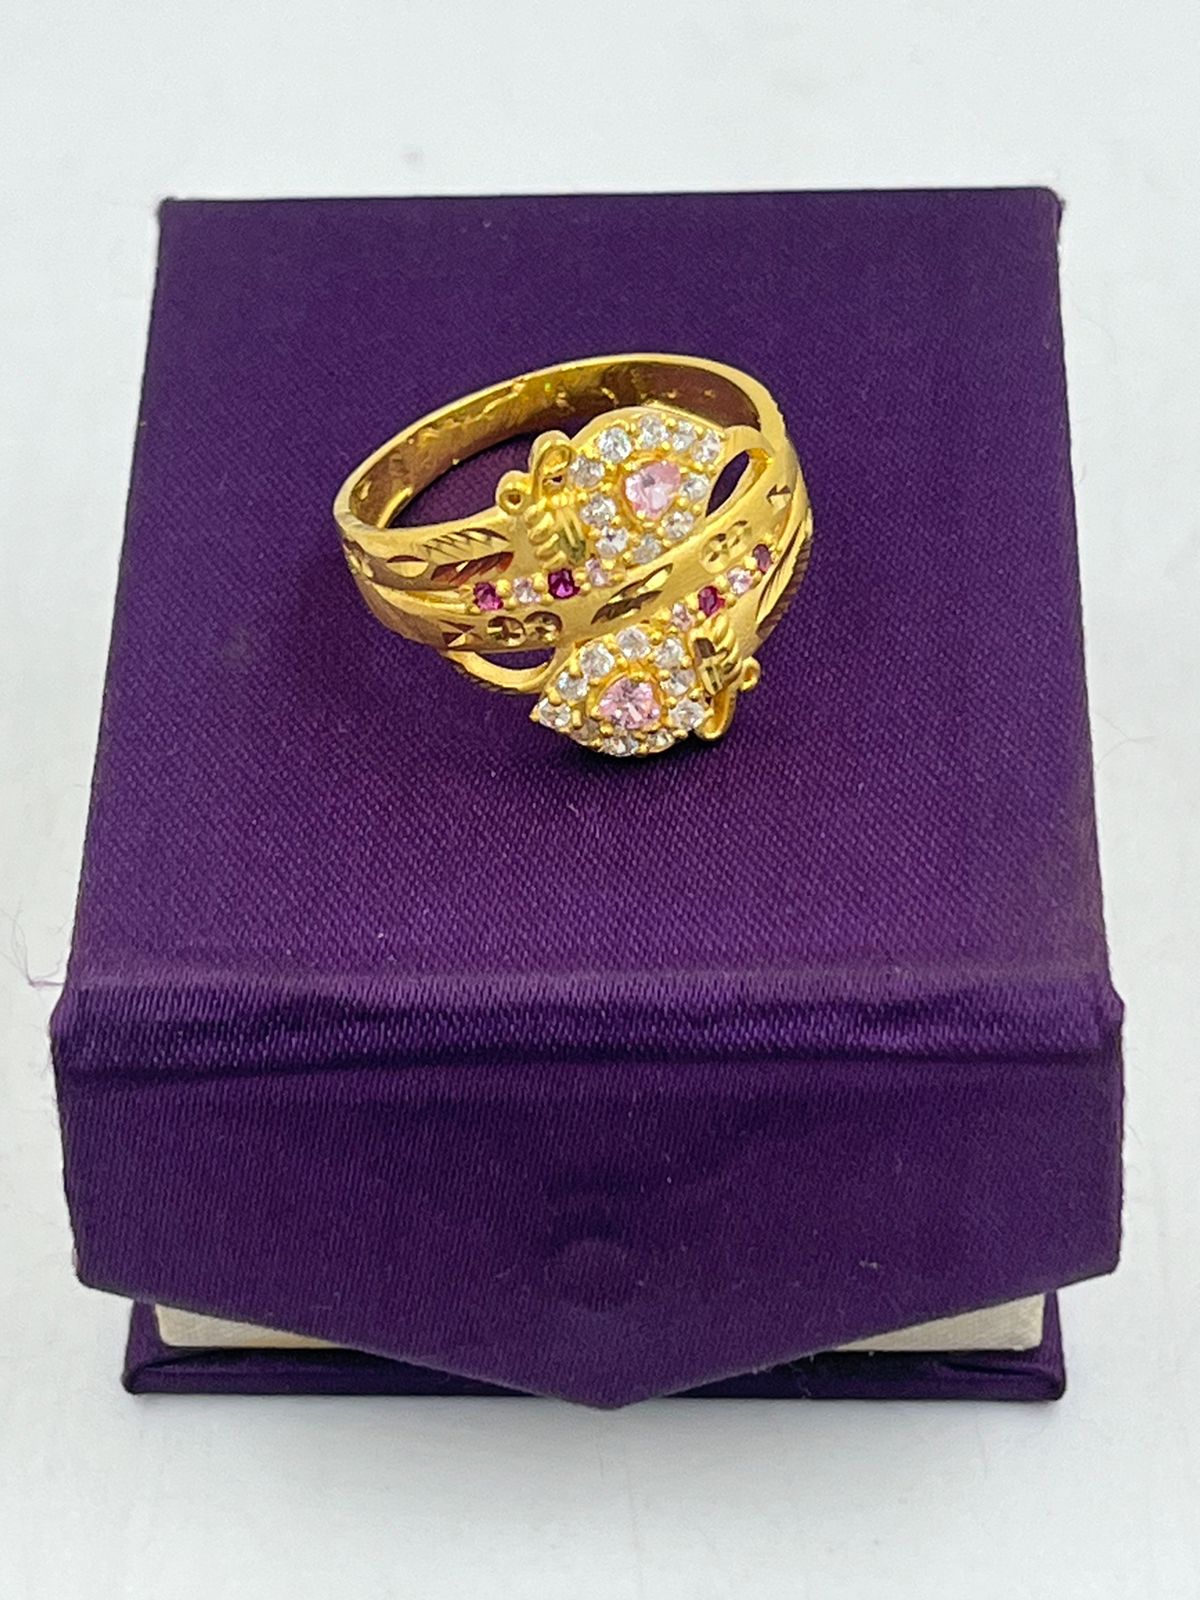 14k Light Weight Ruby Diamond Ring For Gift Purpose - Gleam Jewels